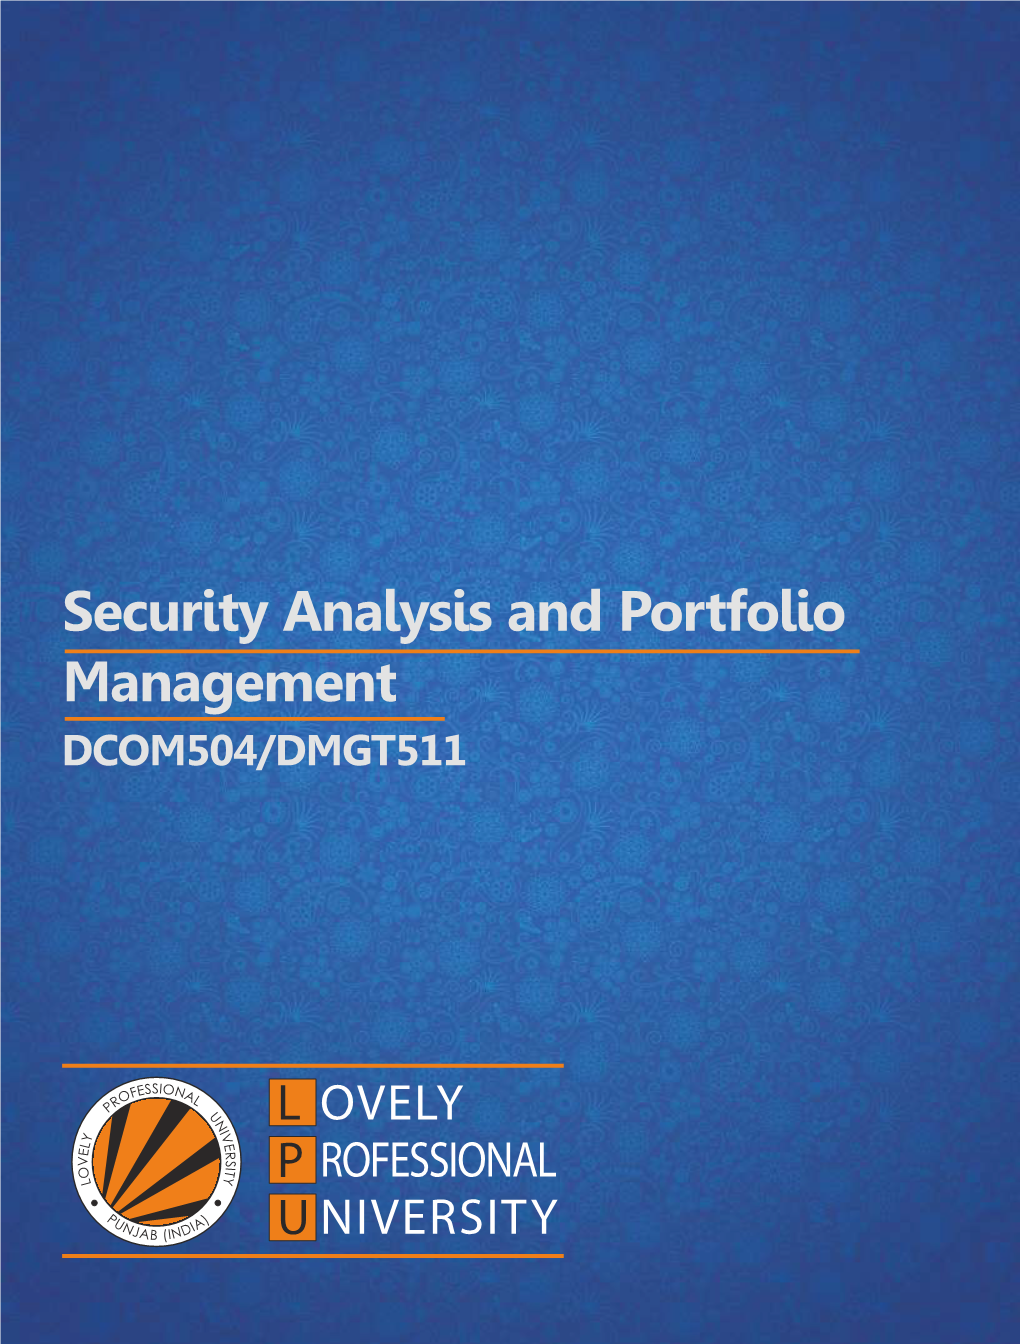 Security Analysis and Portfolio Management DCOM504/DMGT511